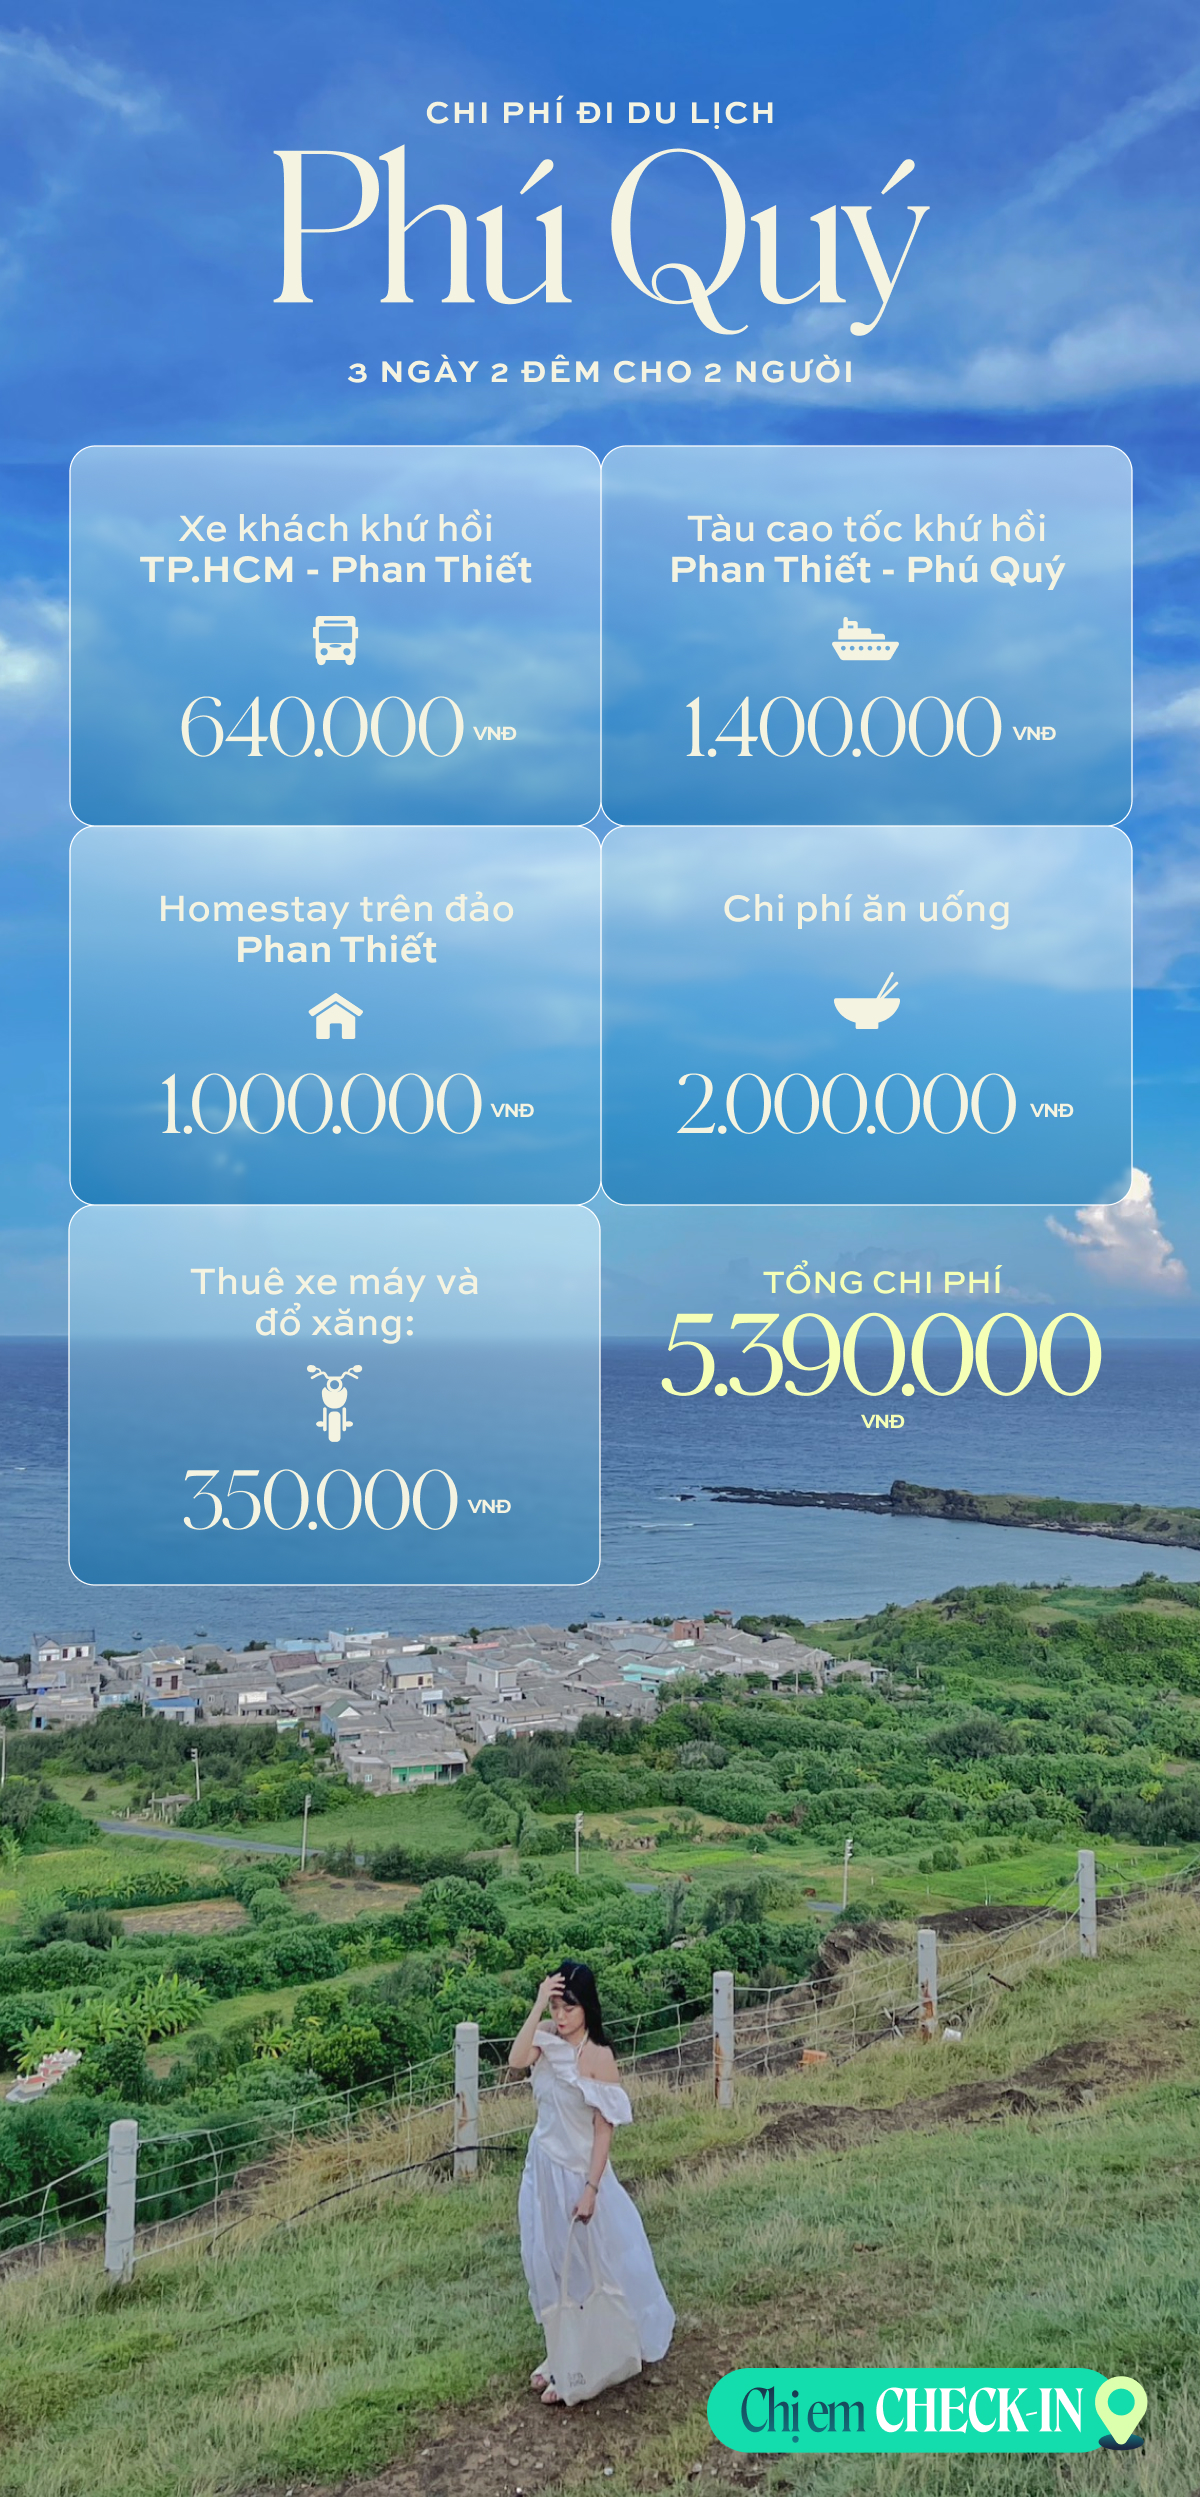 Đi du lịch đảo Phú Quý chỉ hơn 2 triệu/người mà có cả trăm ảnh check-in siêu đẹp và đây là lịch trình để chị em tham khảo- Ảnh 29.